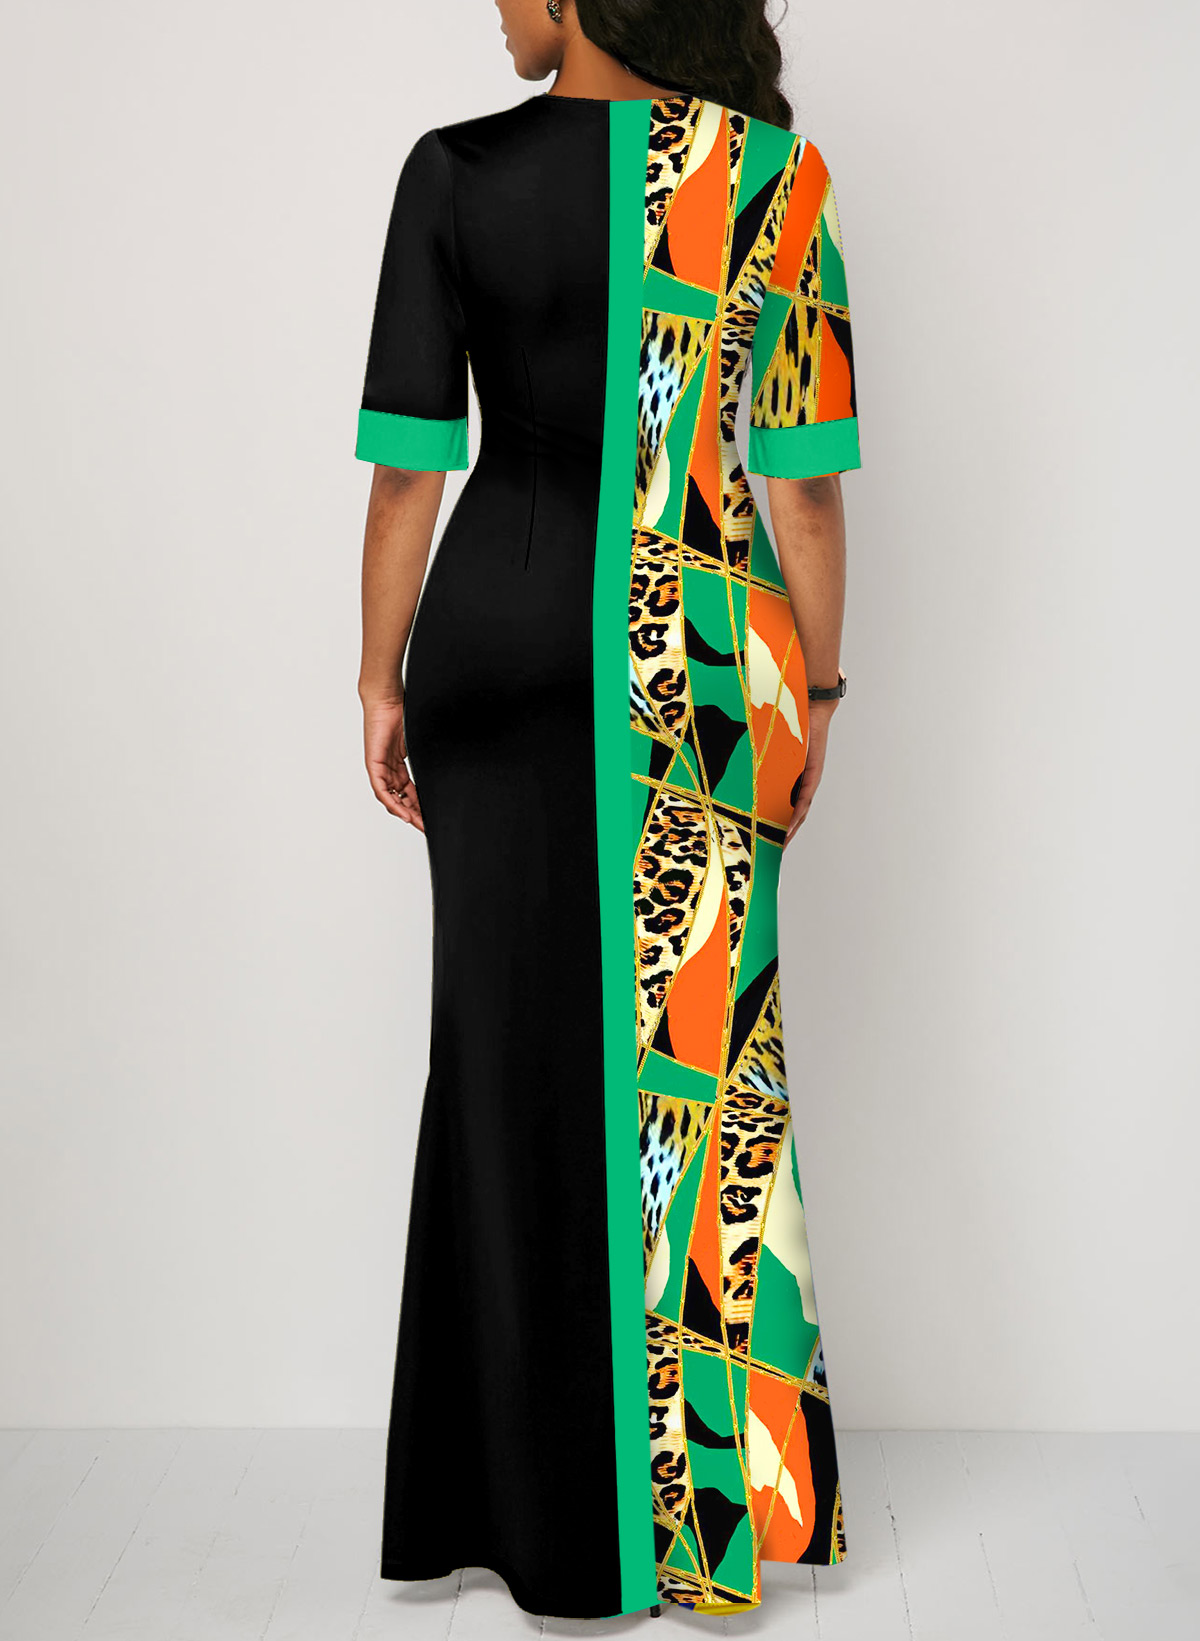 Leopard Split Multi Color Maxi Dress